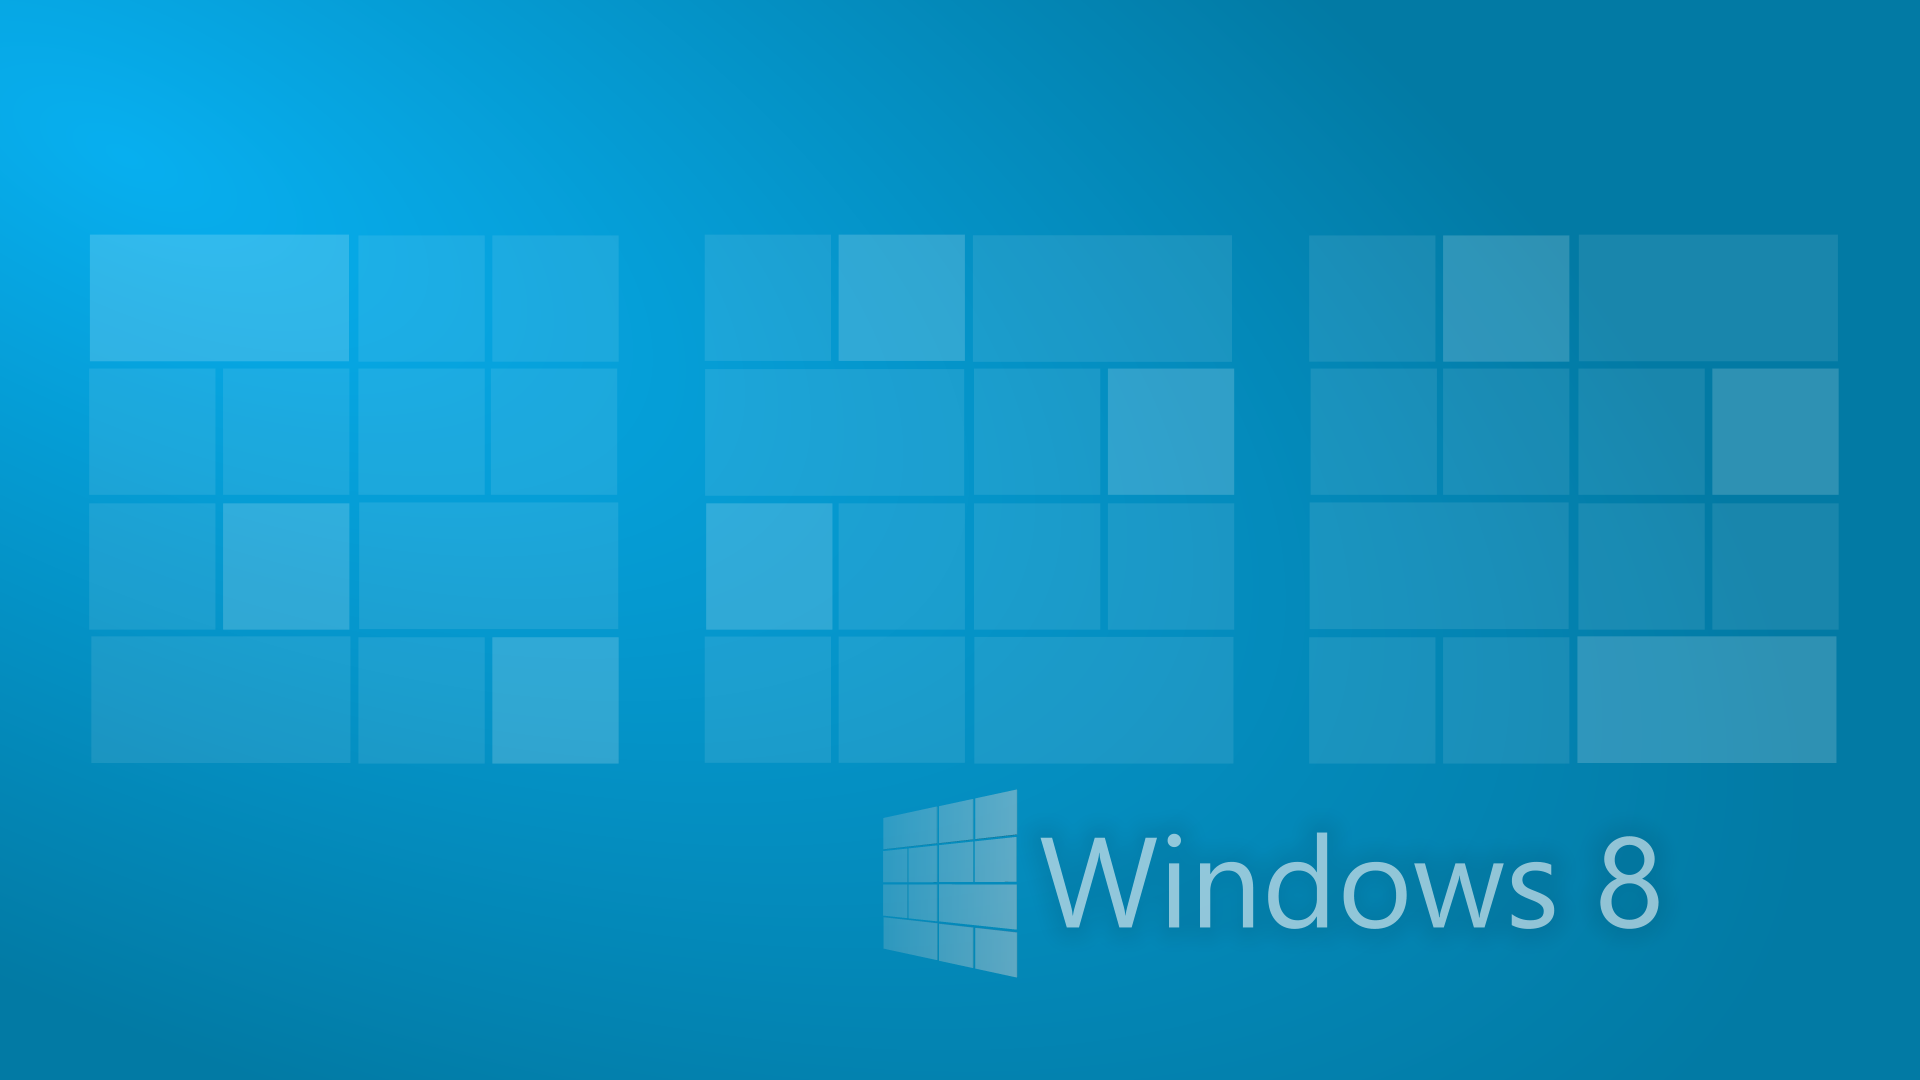 Windows 8 Wallpaper HD - CuteWallpaper.org